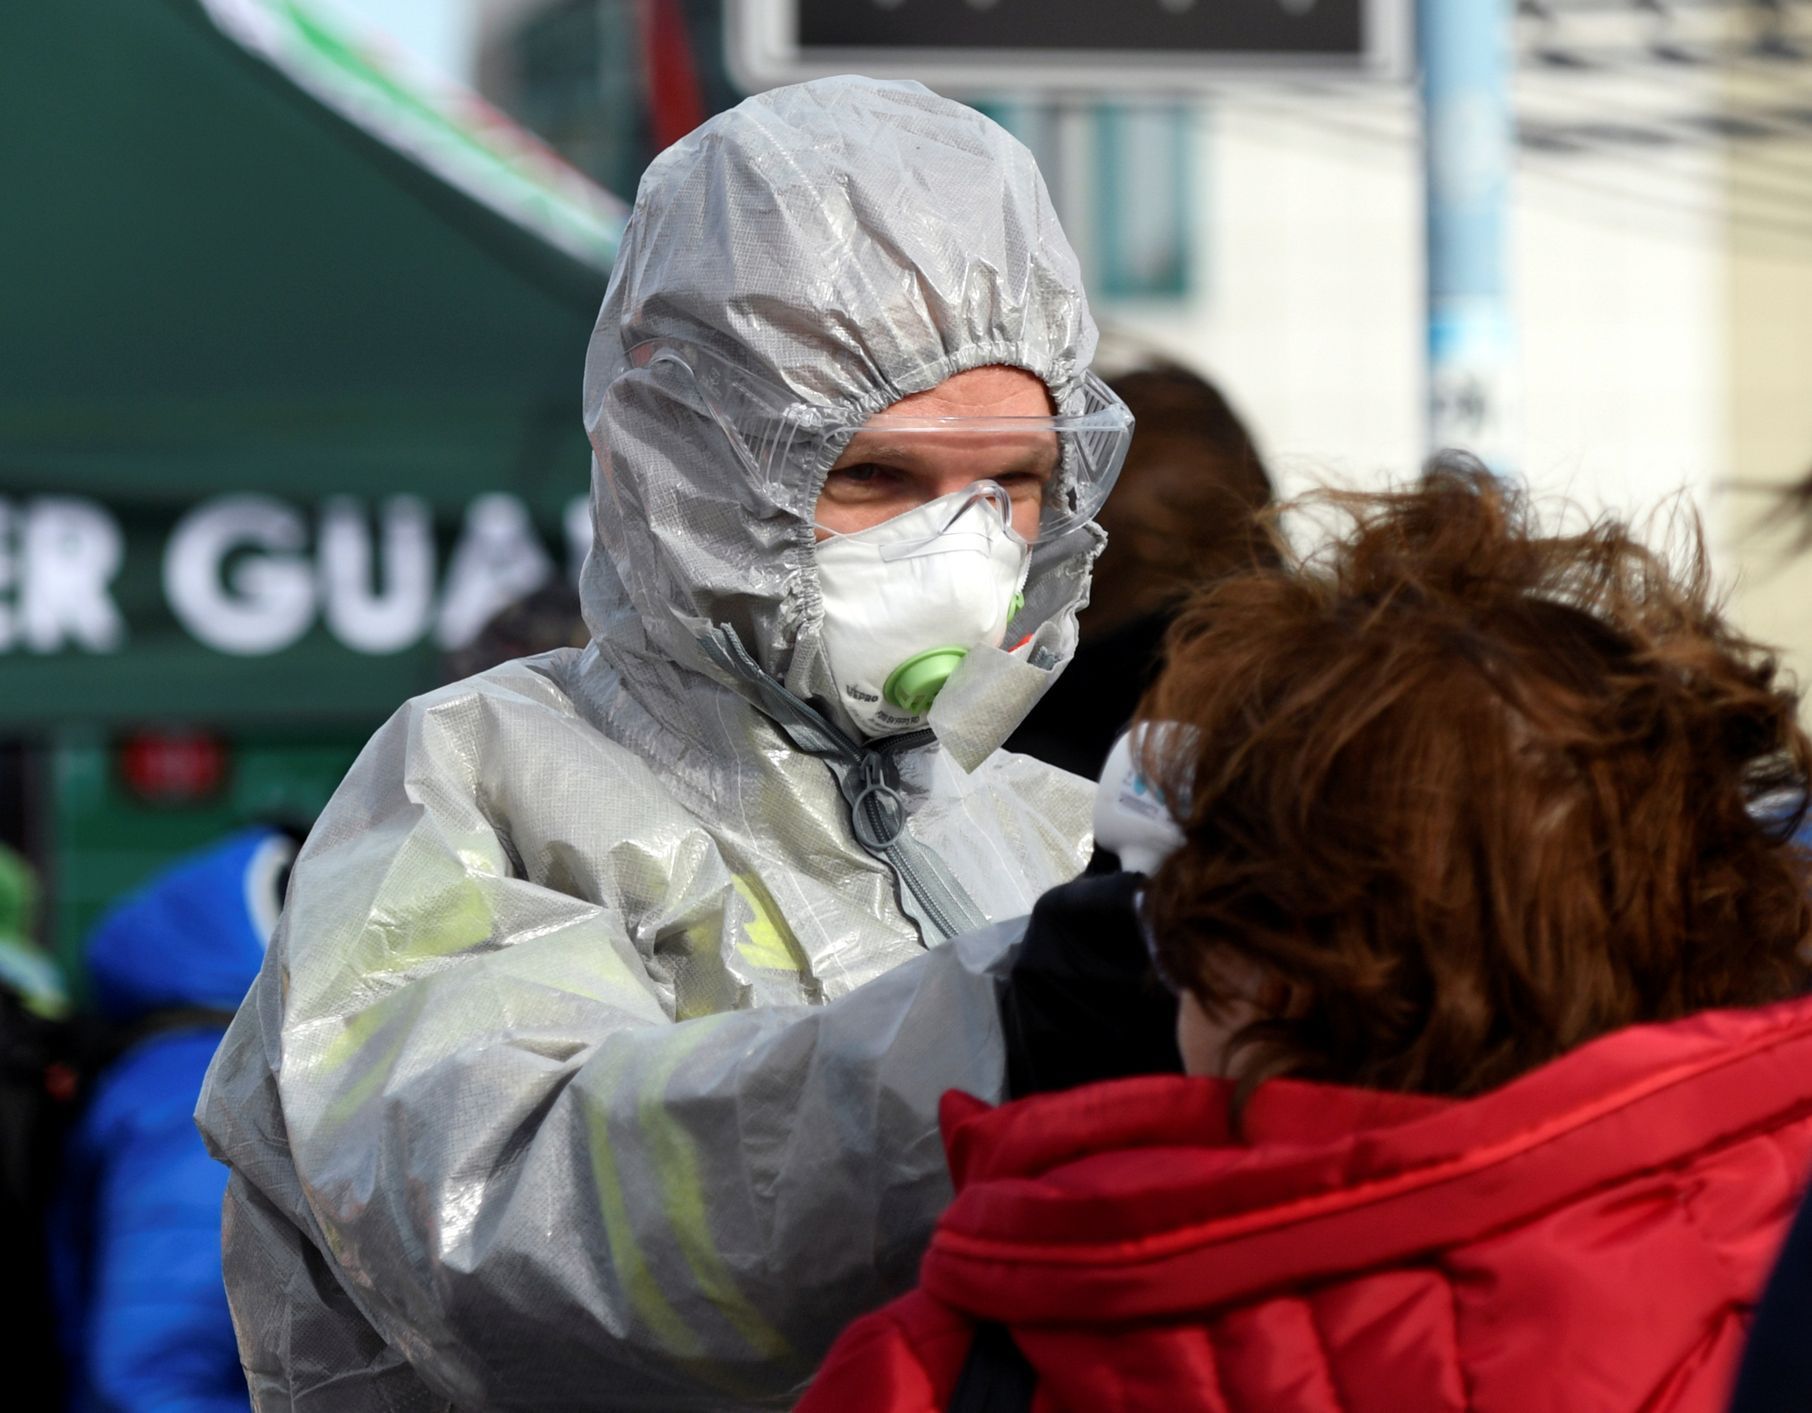 Foto / Německo / Koronavirus / Zahraničí / Reuters / Upload 17. 3. 2020